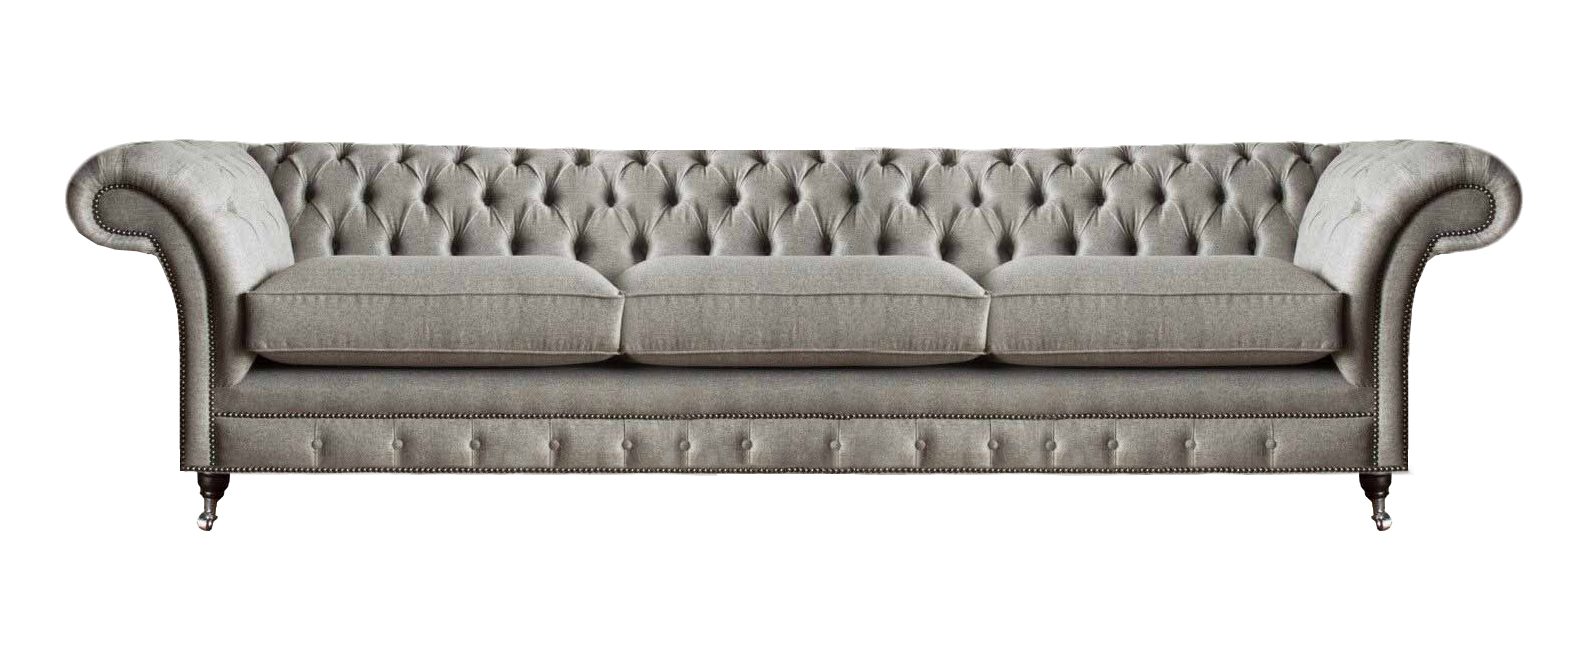 JVmoebel Chesterfield-Sofa Luxus Sitzmöbel Design Sofa Dreisitze Wohnzimmer Couch Neu, 1 Teile, Made in Europa